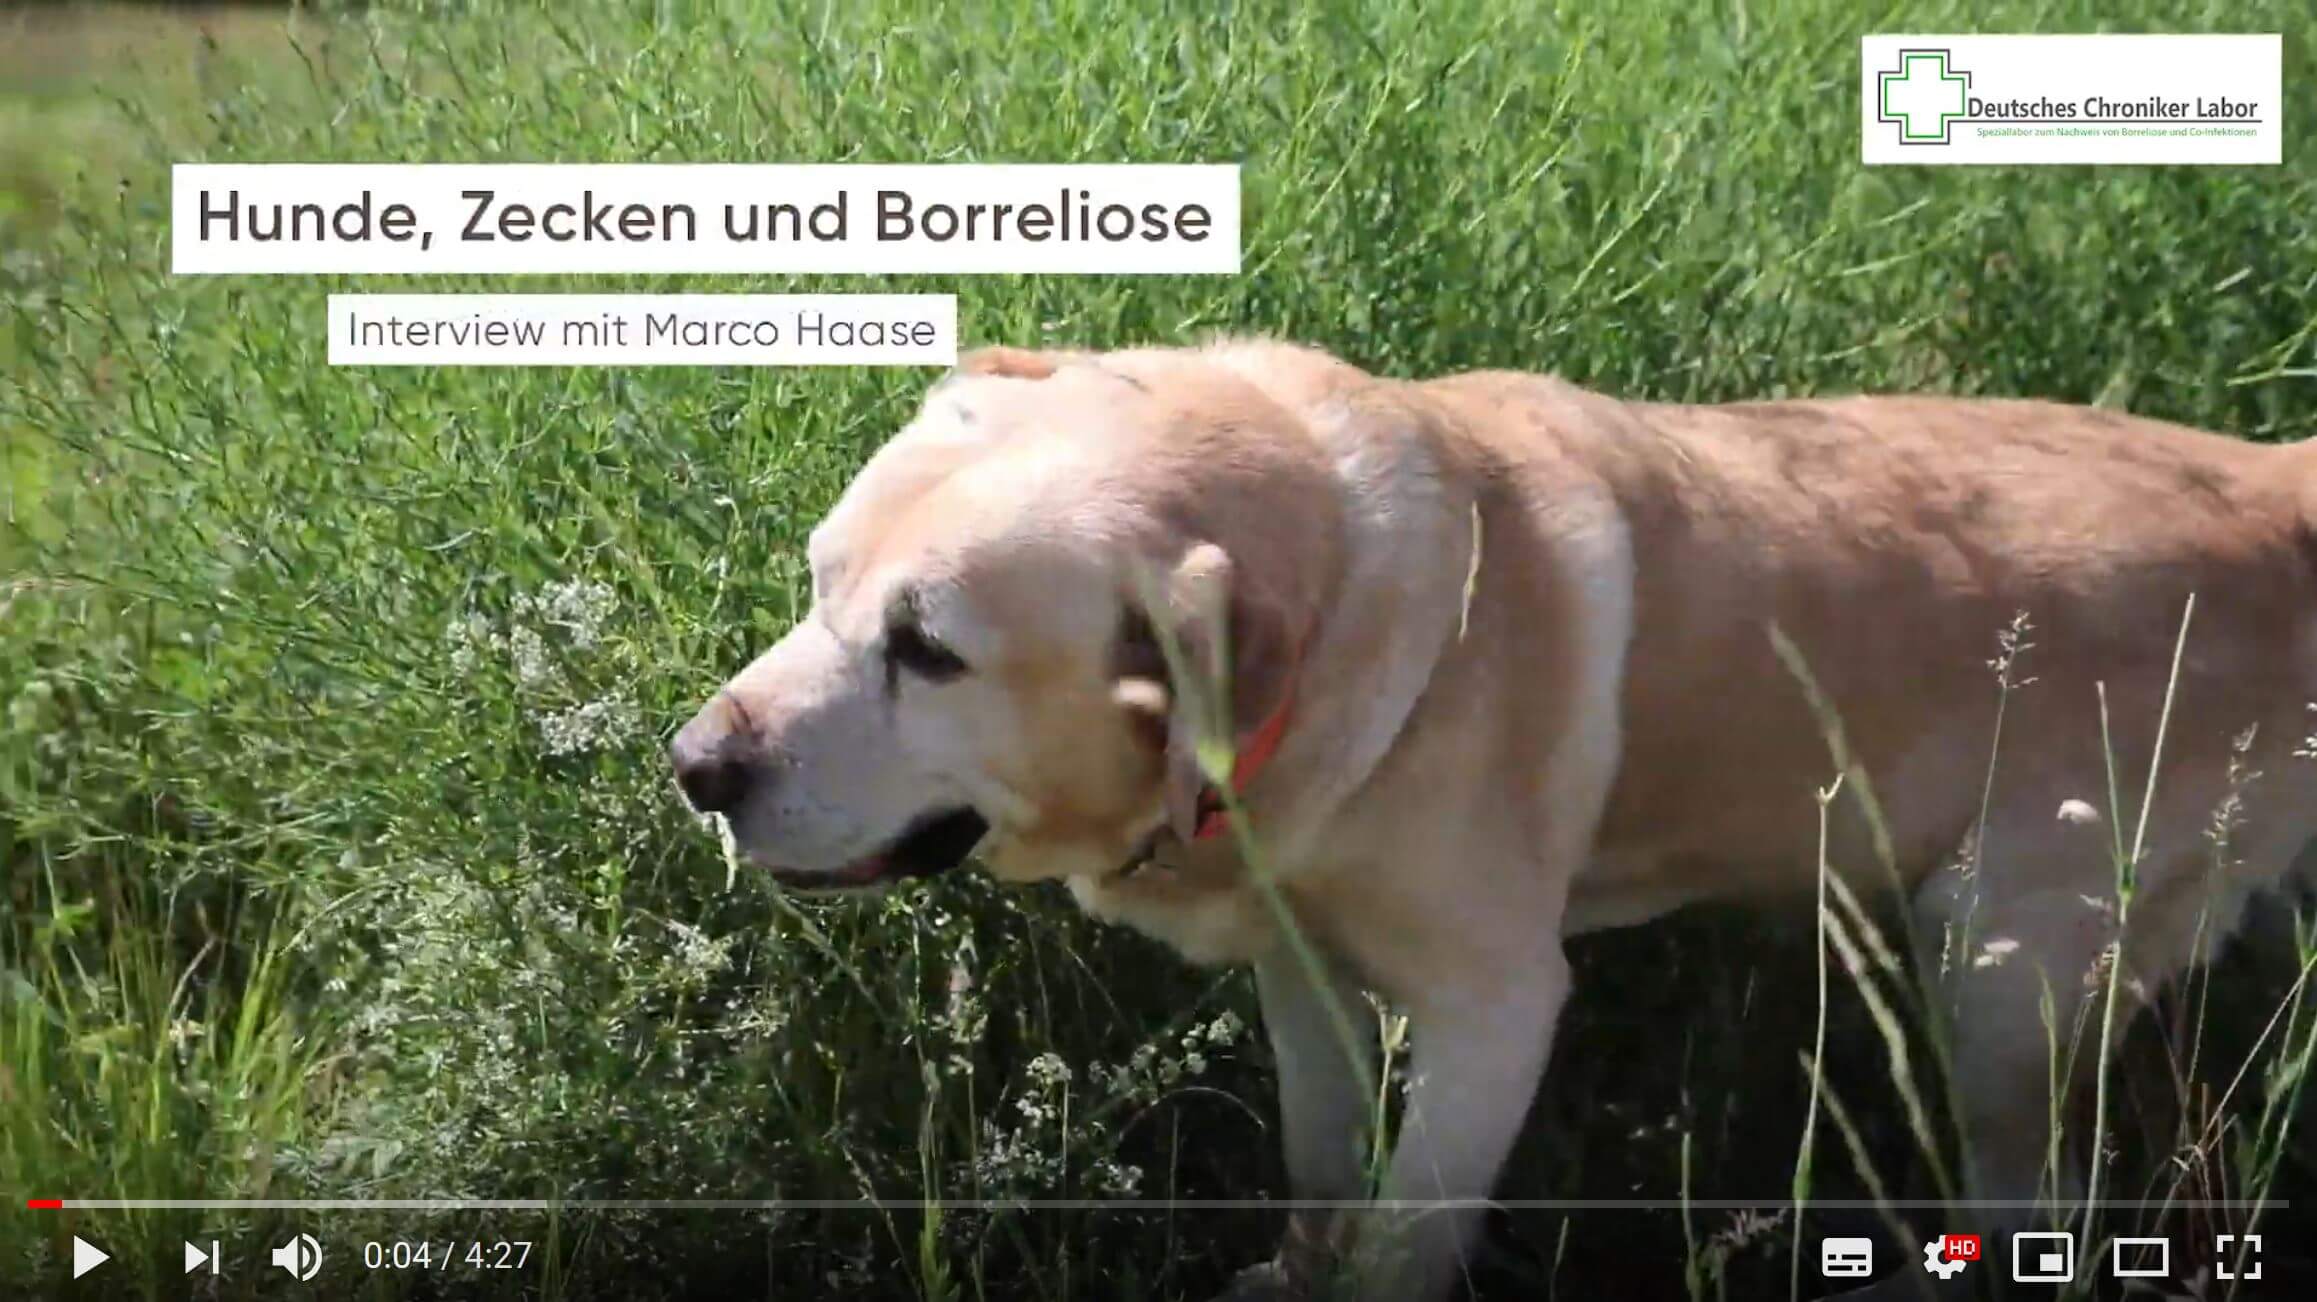 Hunde und Zecken: Borreliose-Gefahr!